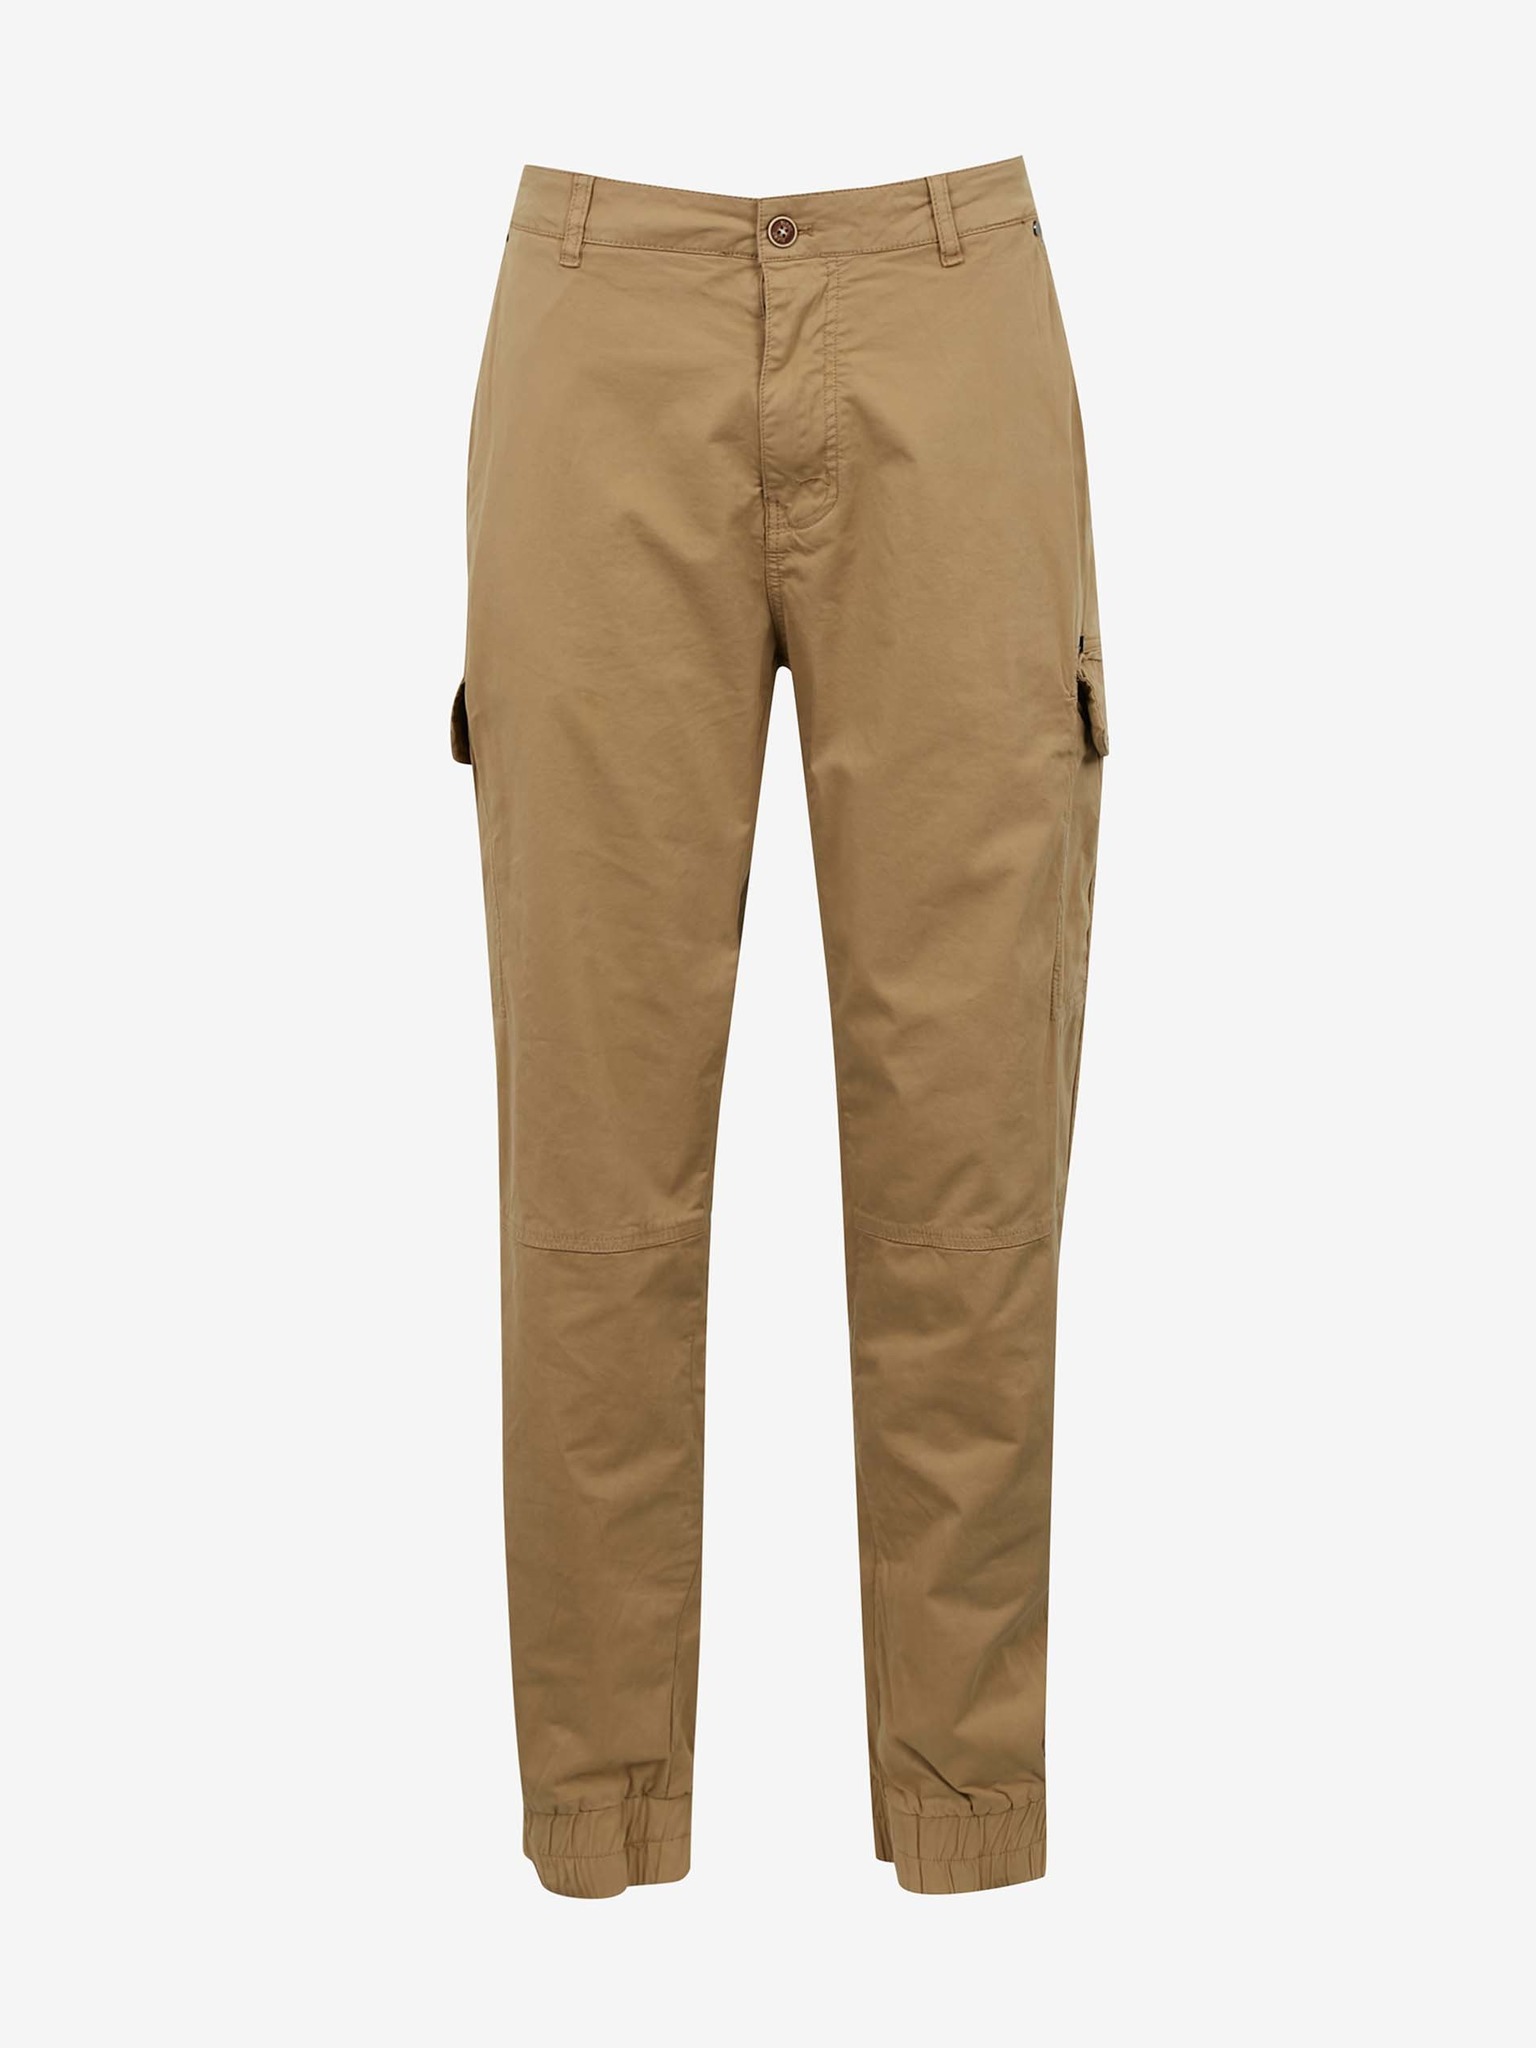 Fotografie Světle hnědé kalhoty s kapsami Blend Nan - 7XL (48/32)